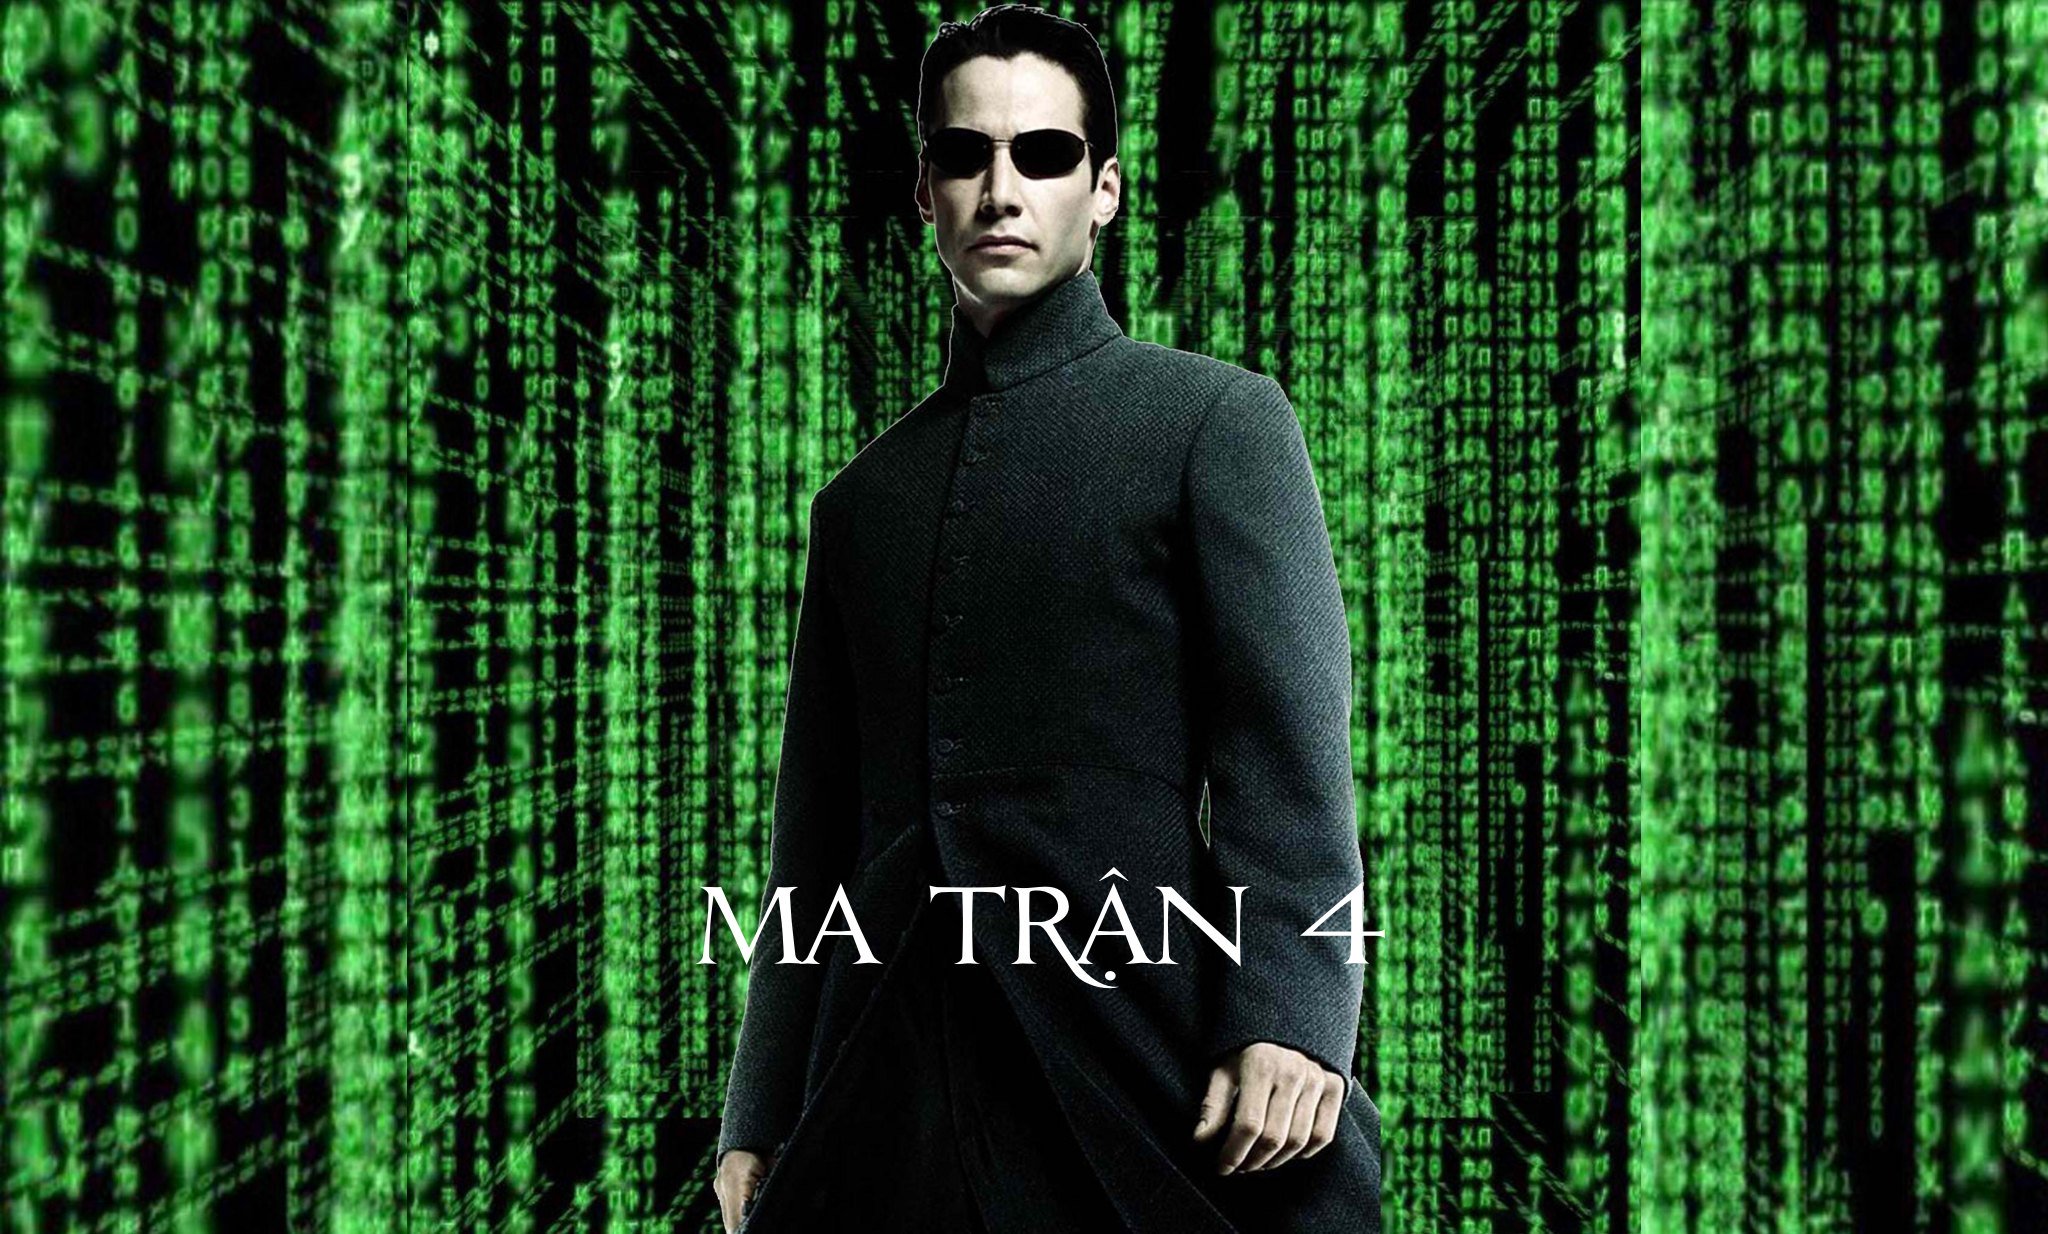 Phim The Matrix 4 sẽ được khởi chiếu ngày 21/5/2021, cùng ngày với John Wick Chapter 4